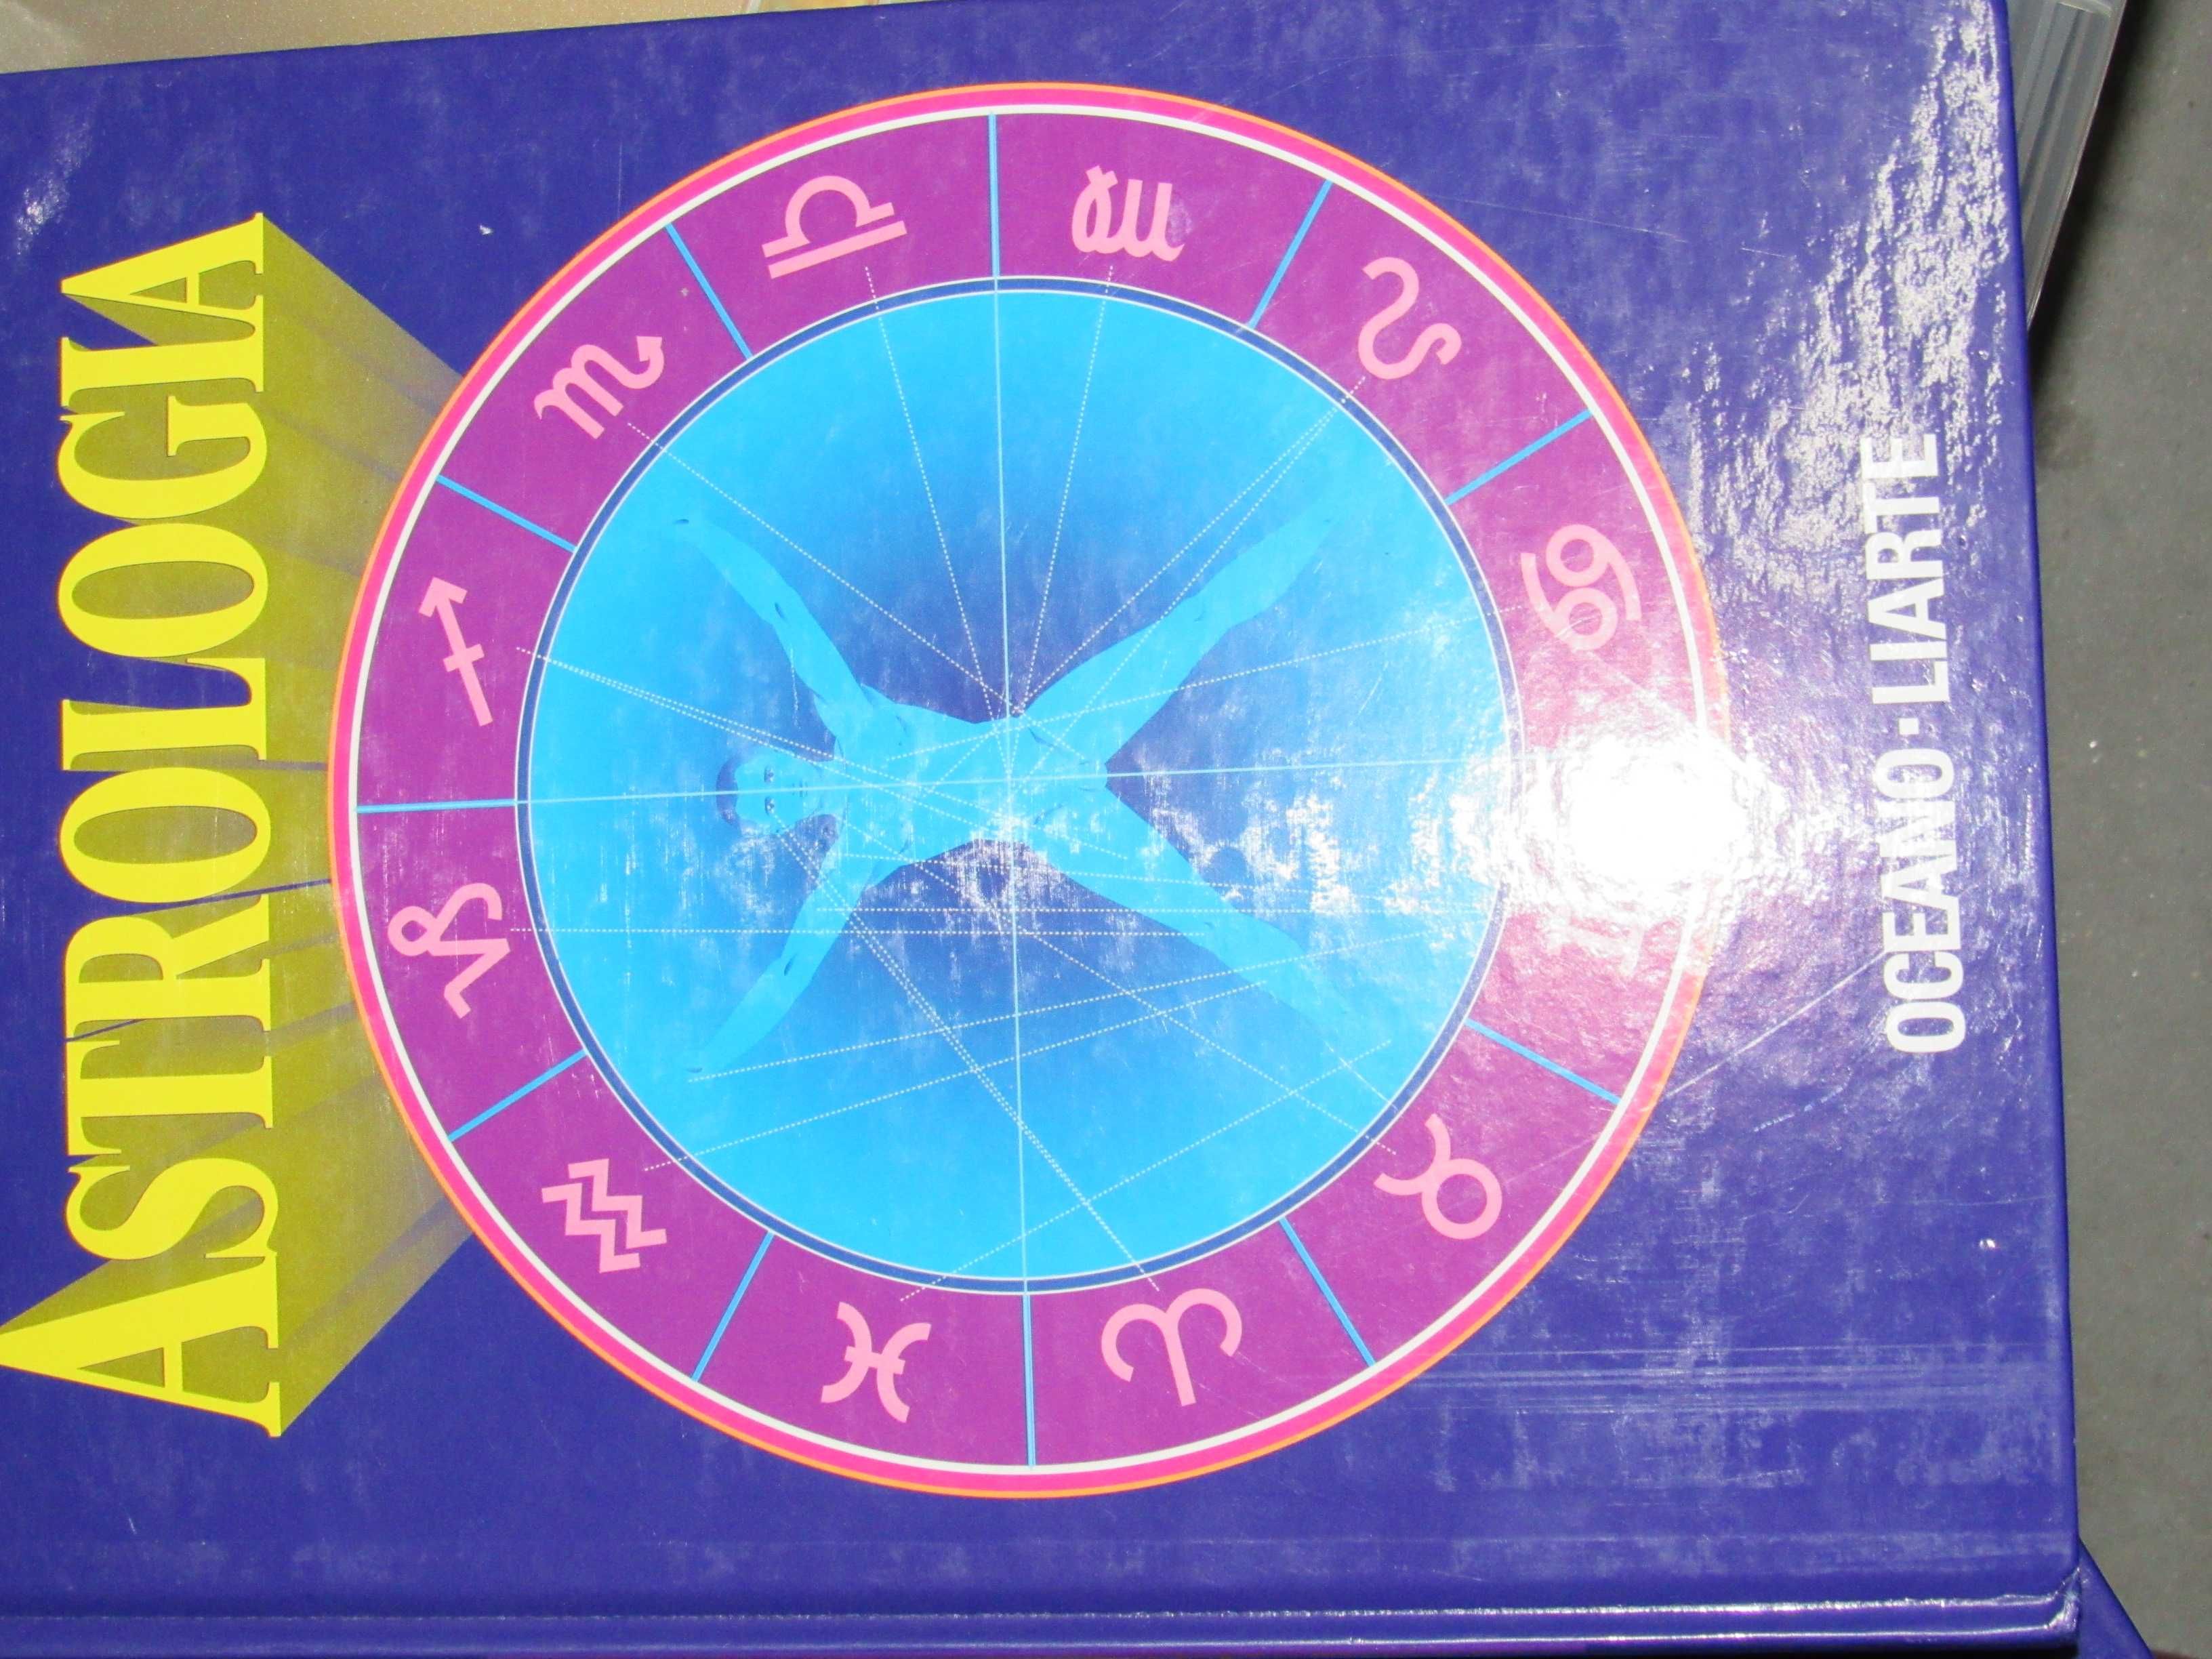 Astrologia, Tarot, Quiromancia, Grafologia

Edição: Oceano -Liarte